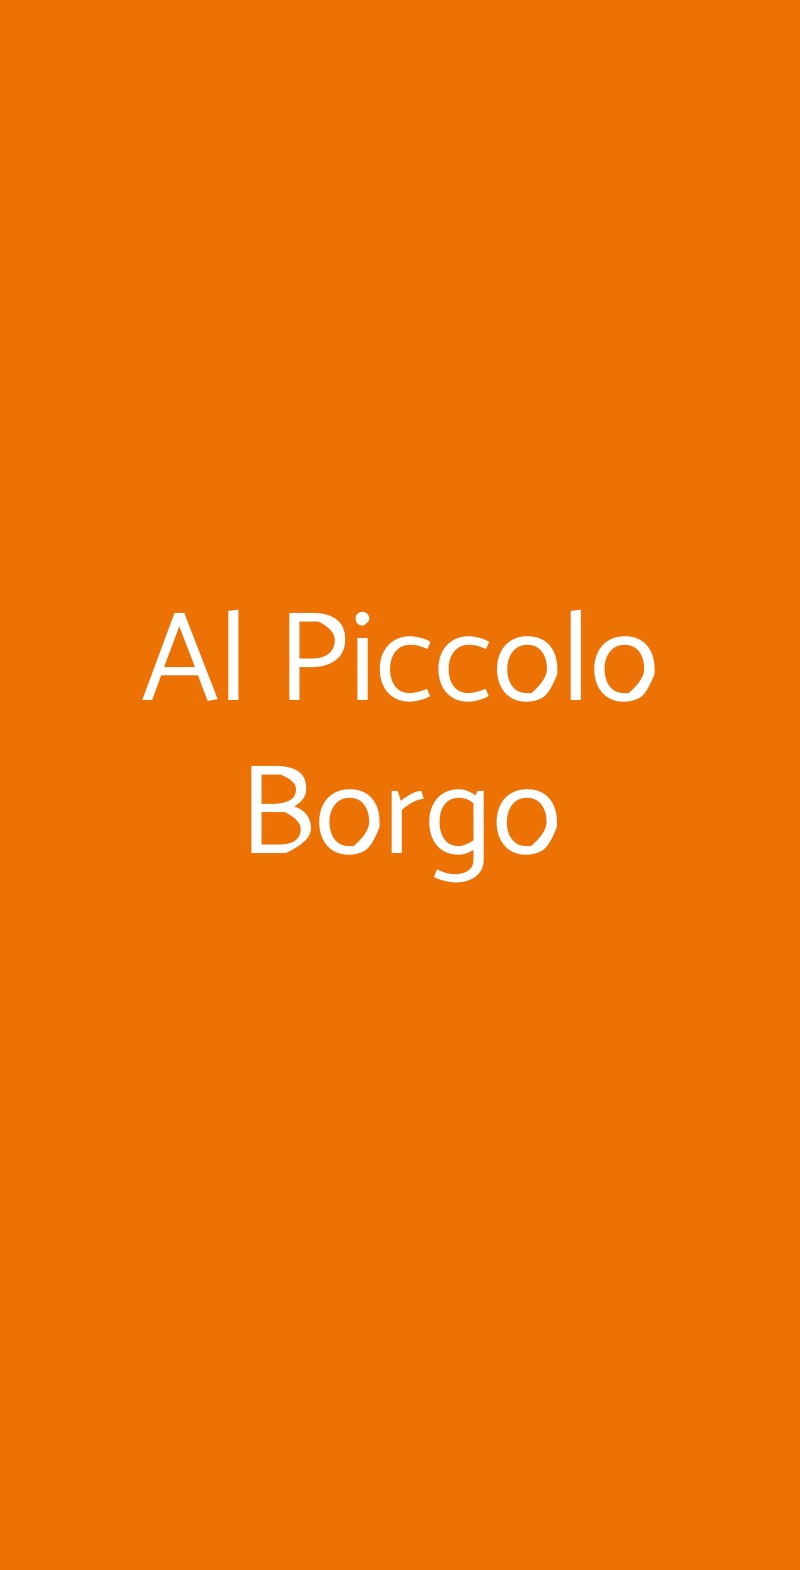 Al Piccolo Borgo Milano menù 1 pagina